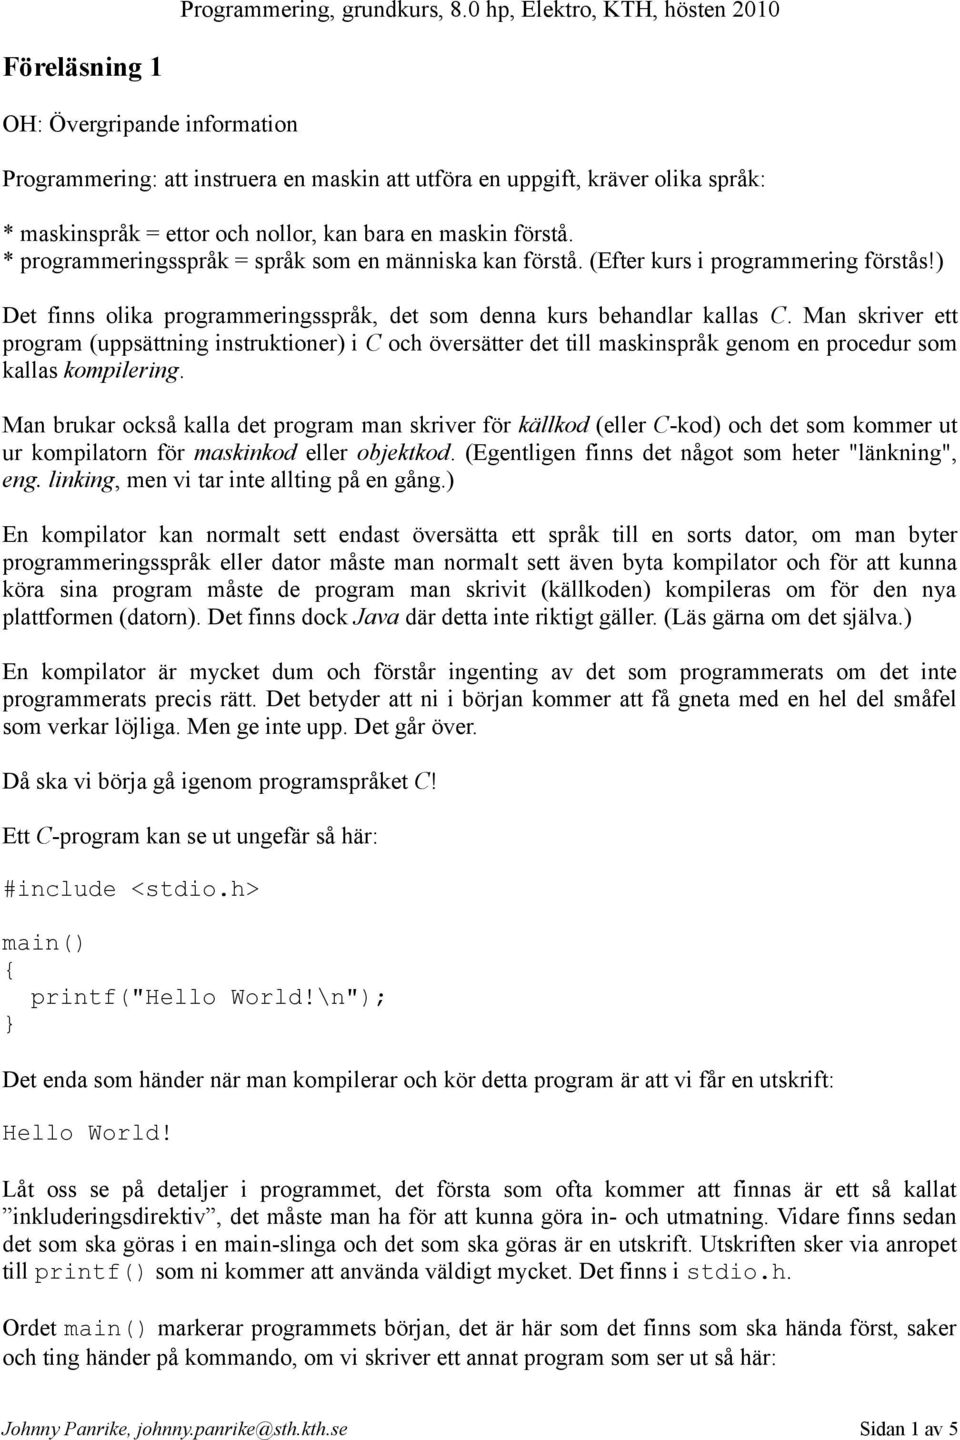 Man skriver ett program (uppsättning instruktioner) i C och översätter det till maskinspråk genom en procedur som kallas kompilering.